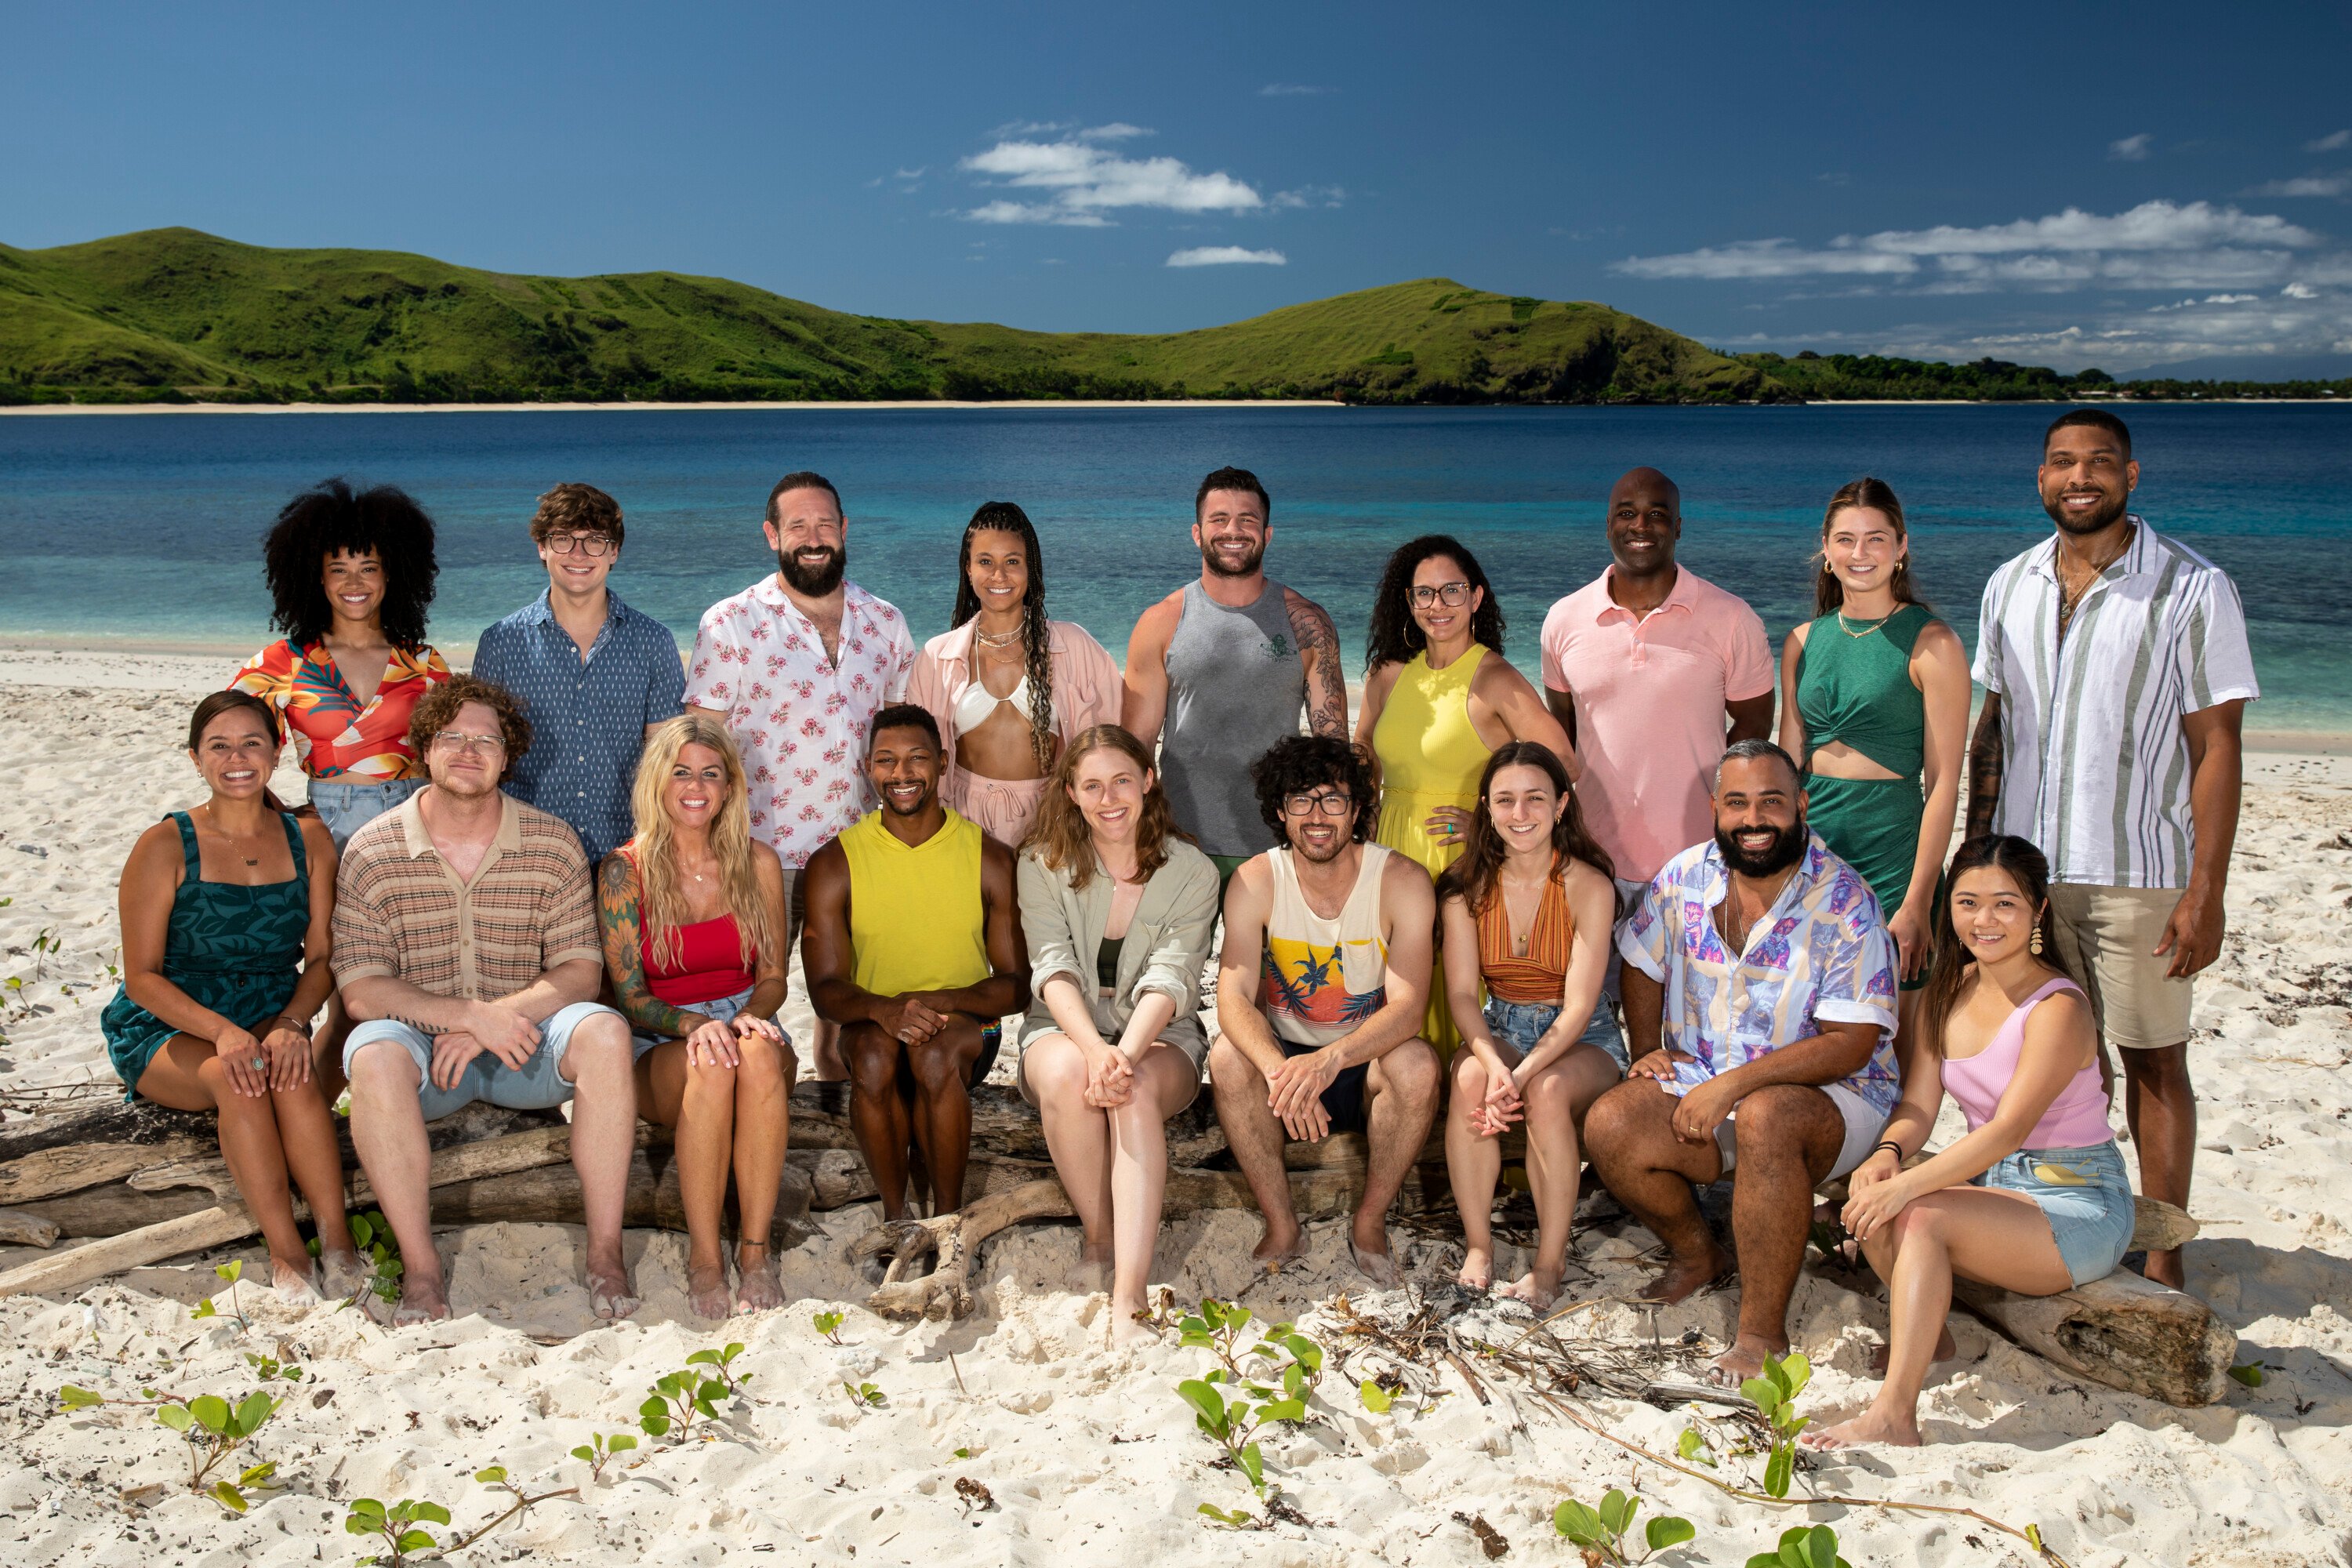 The 'Survivor' Season 44 cast poses for photos on the beach.